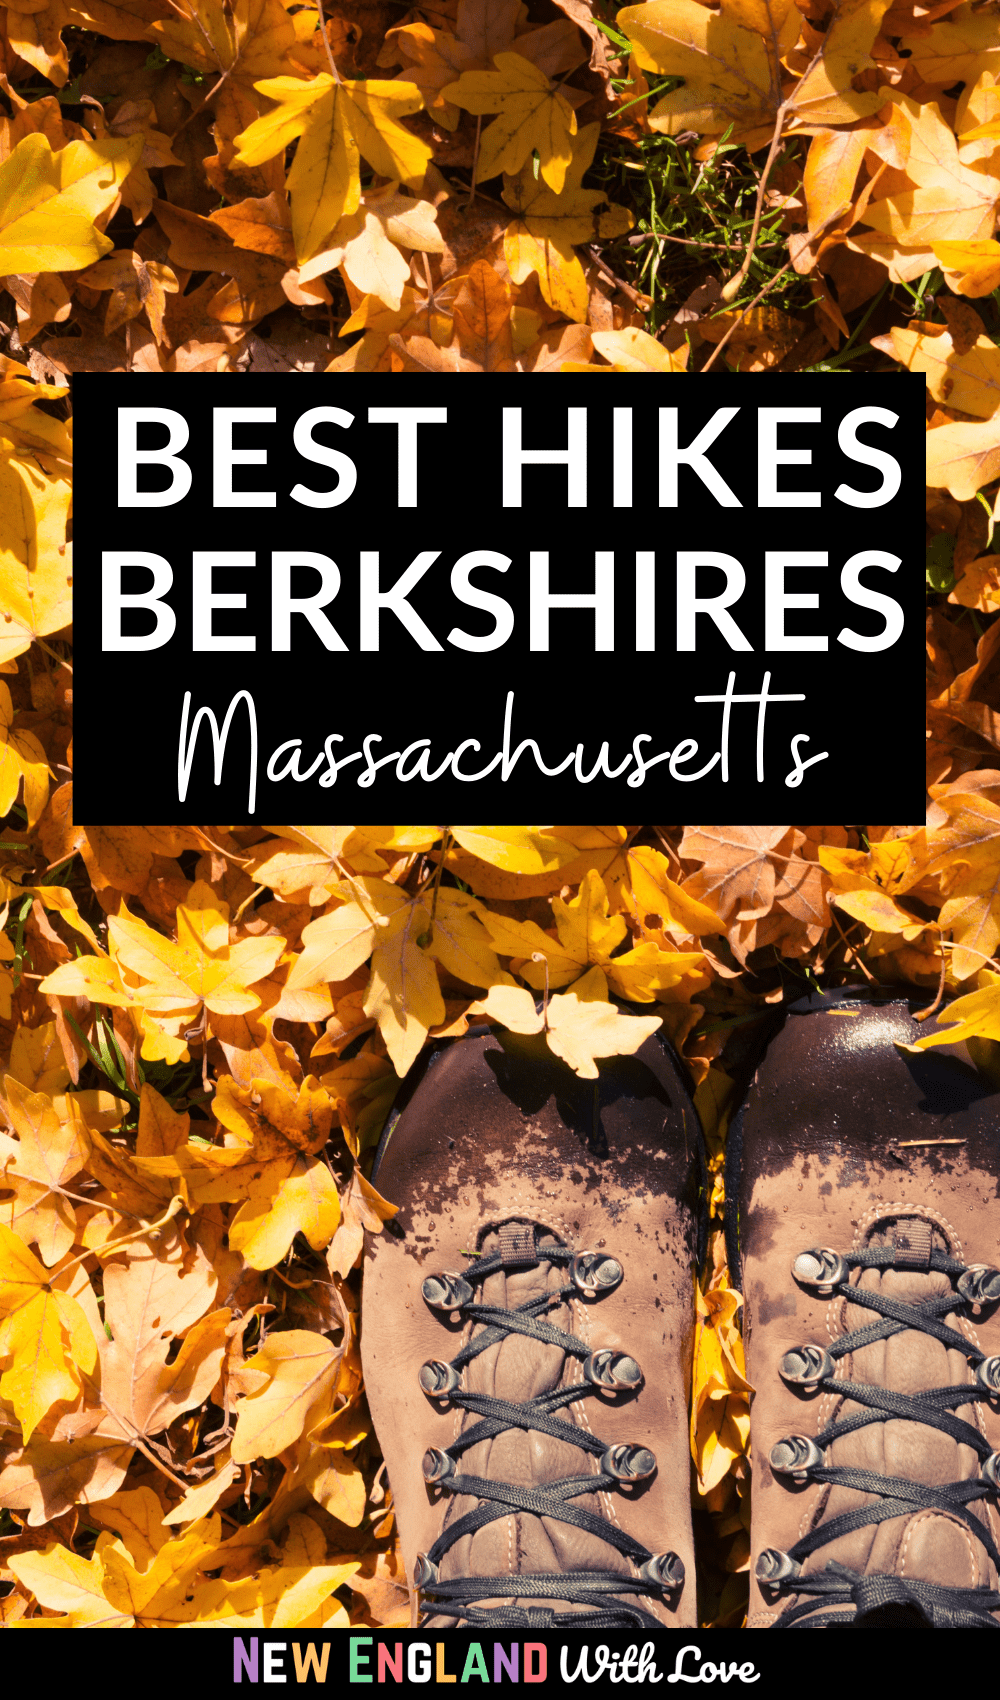 Pinterest graphic reading "Best Hikes Berkshires Massachusetts"